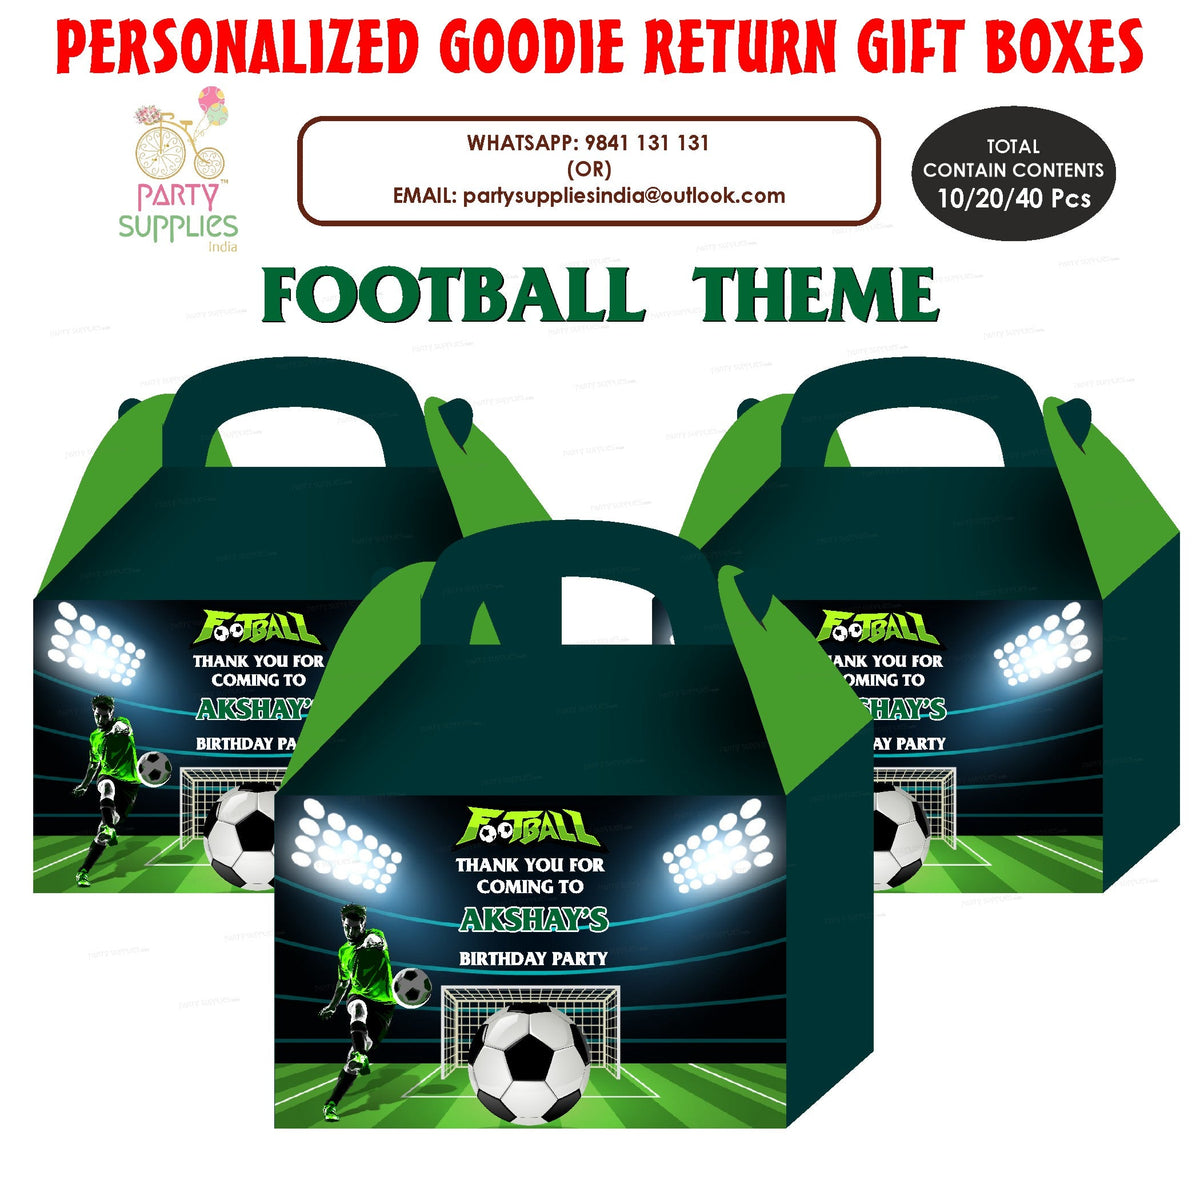 PSI Football theme Goodie Return Gift Boxes